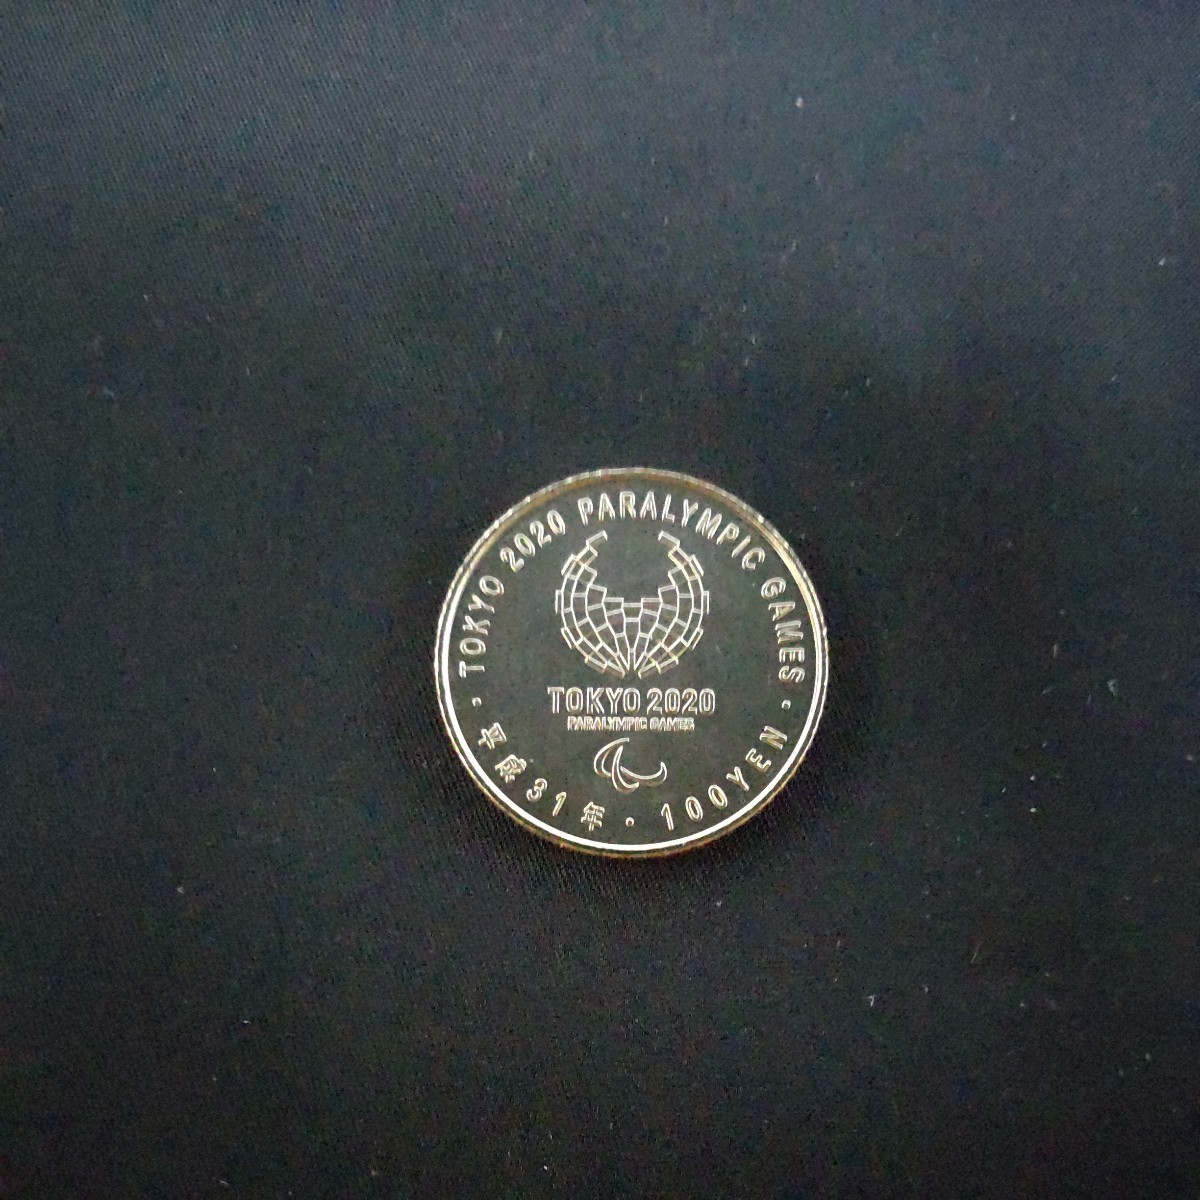 2次 ウエイトリフティング100円記念硬貨 東京2020オリンピック パラリンピック_画像2